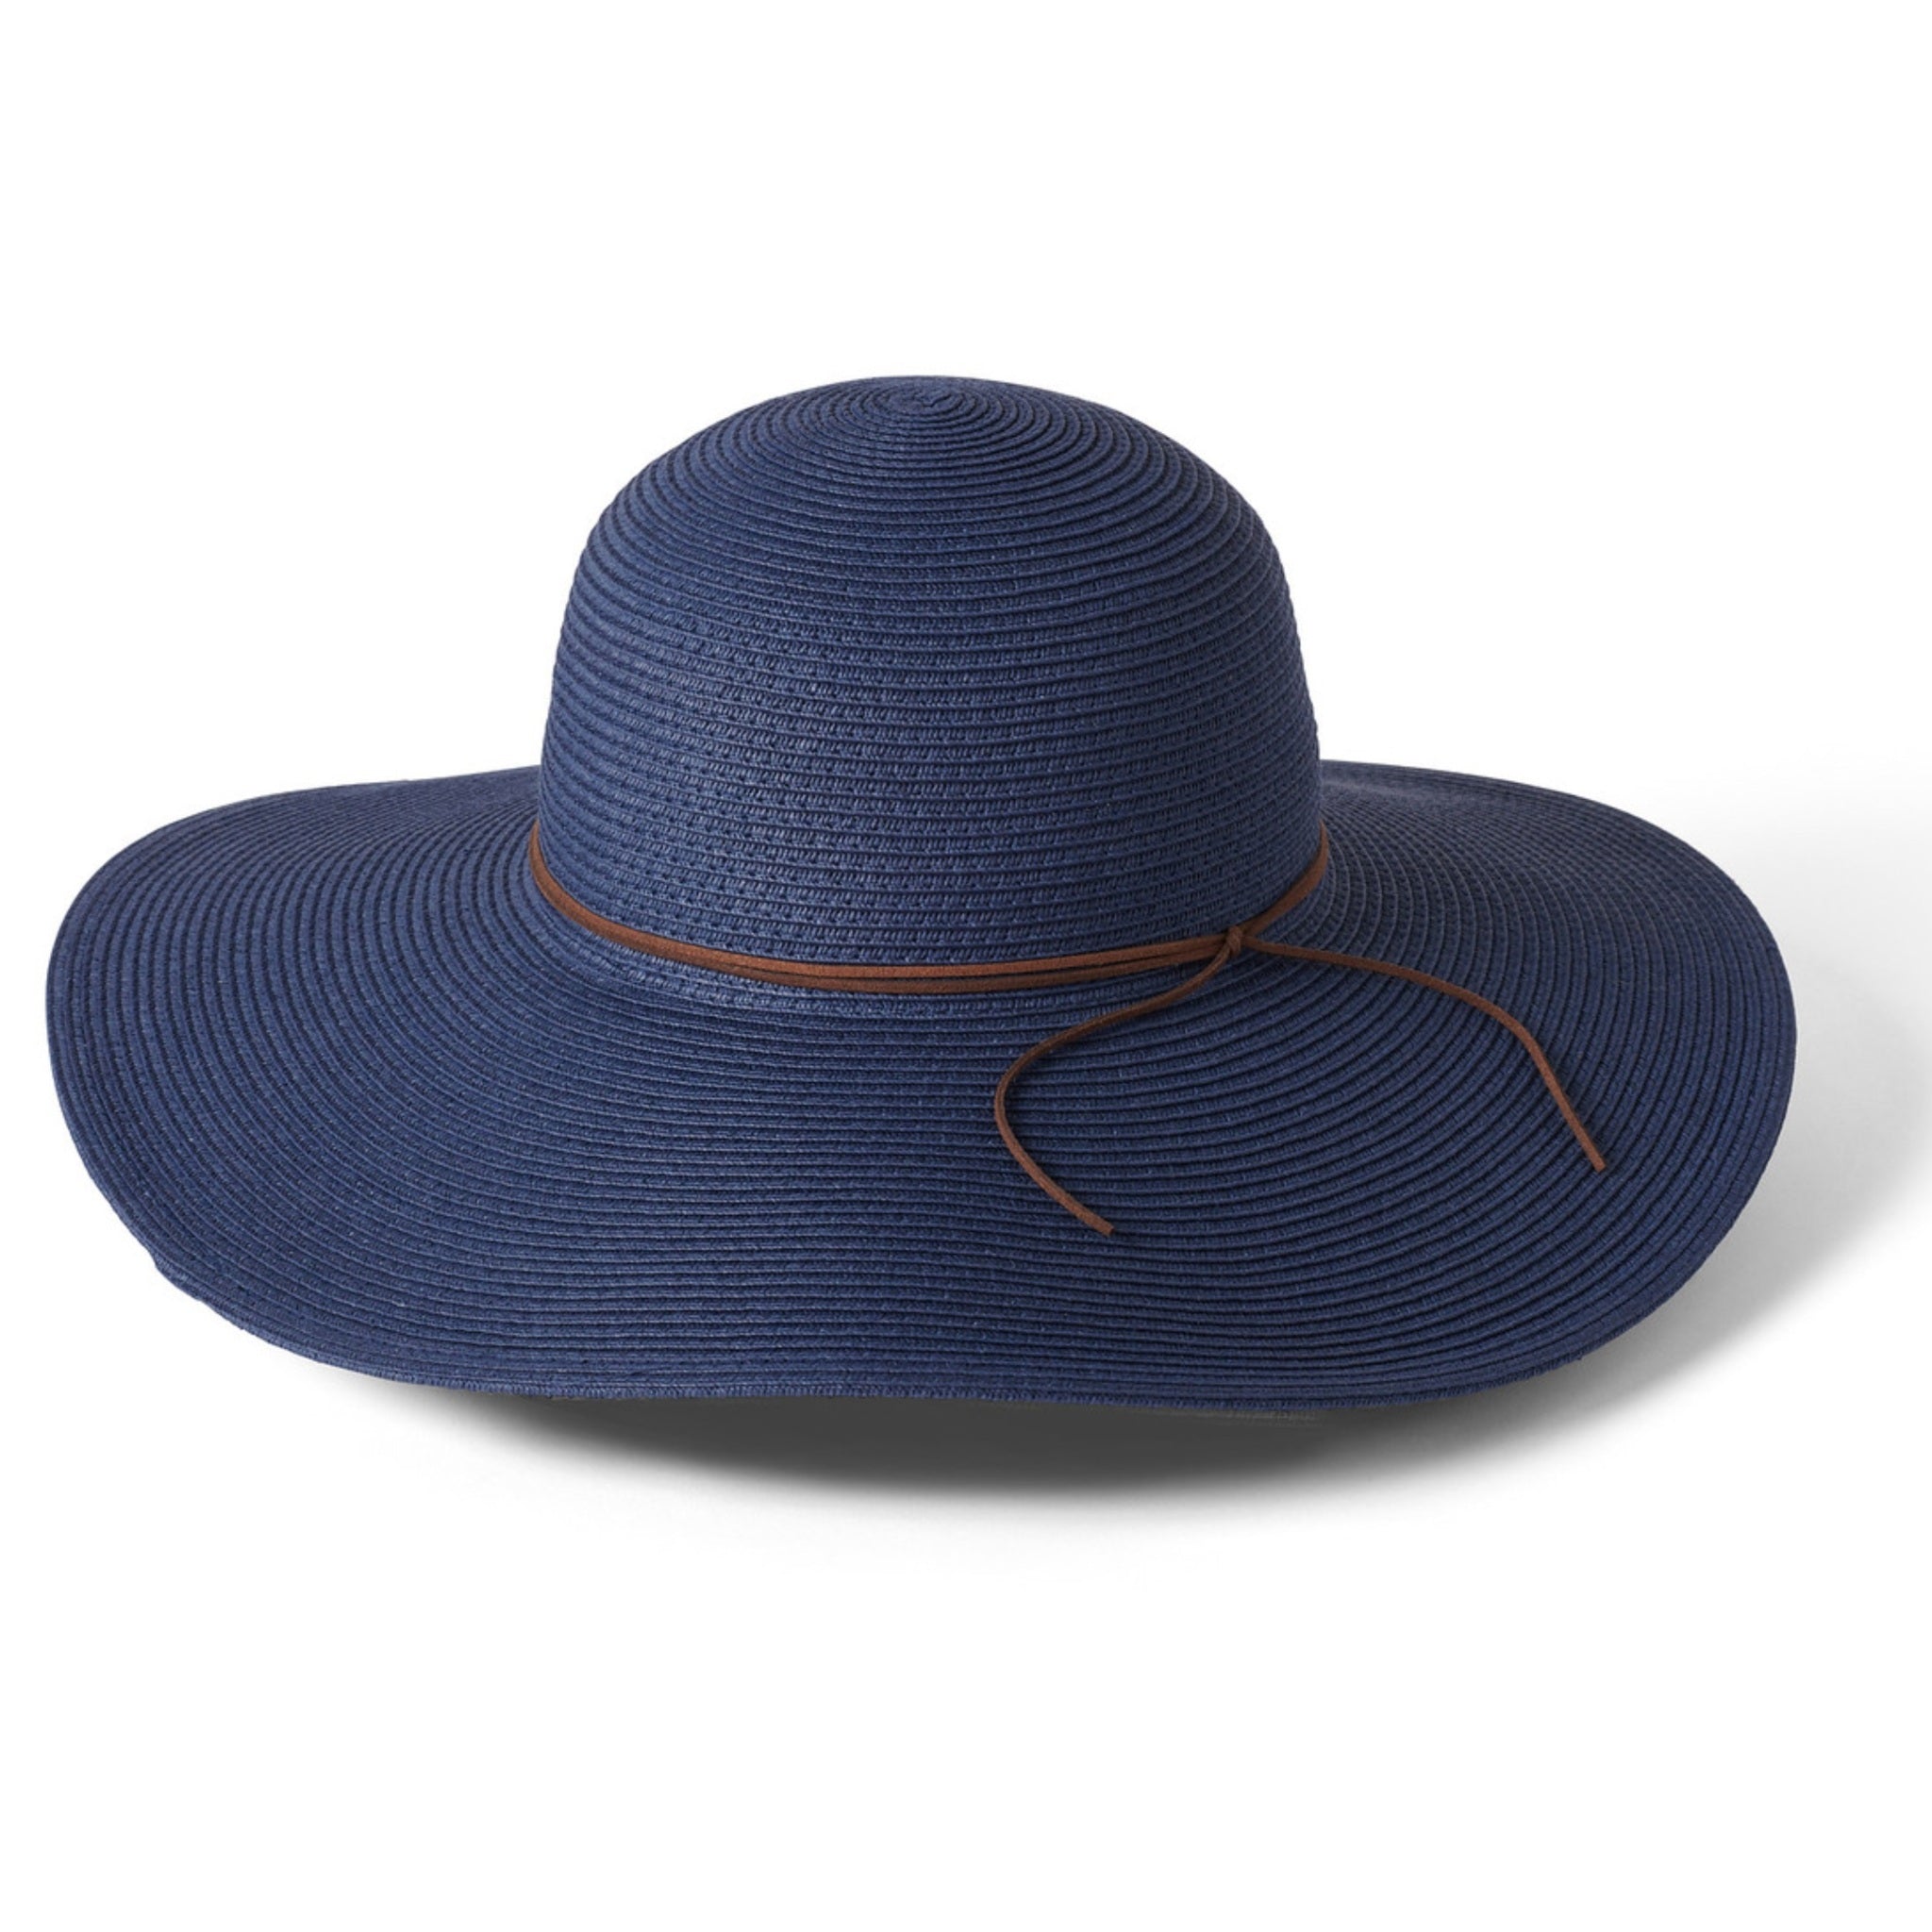 The Hat Shop Ladies Failsworth 'Capri' Sun Hat Navy